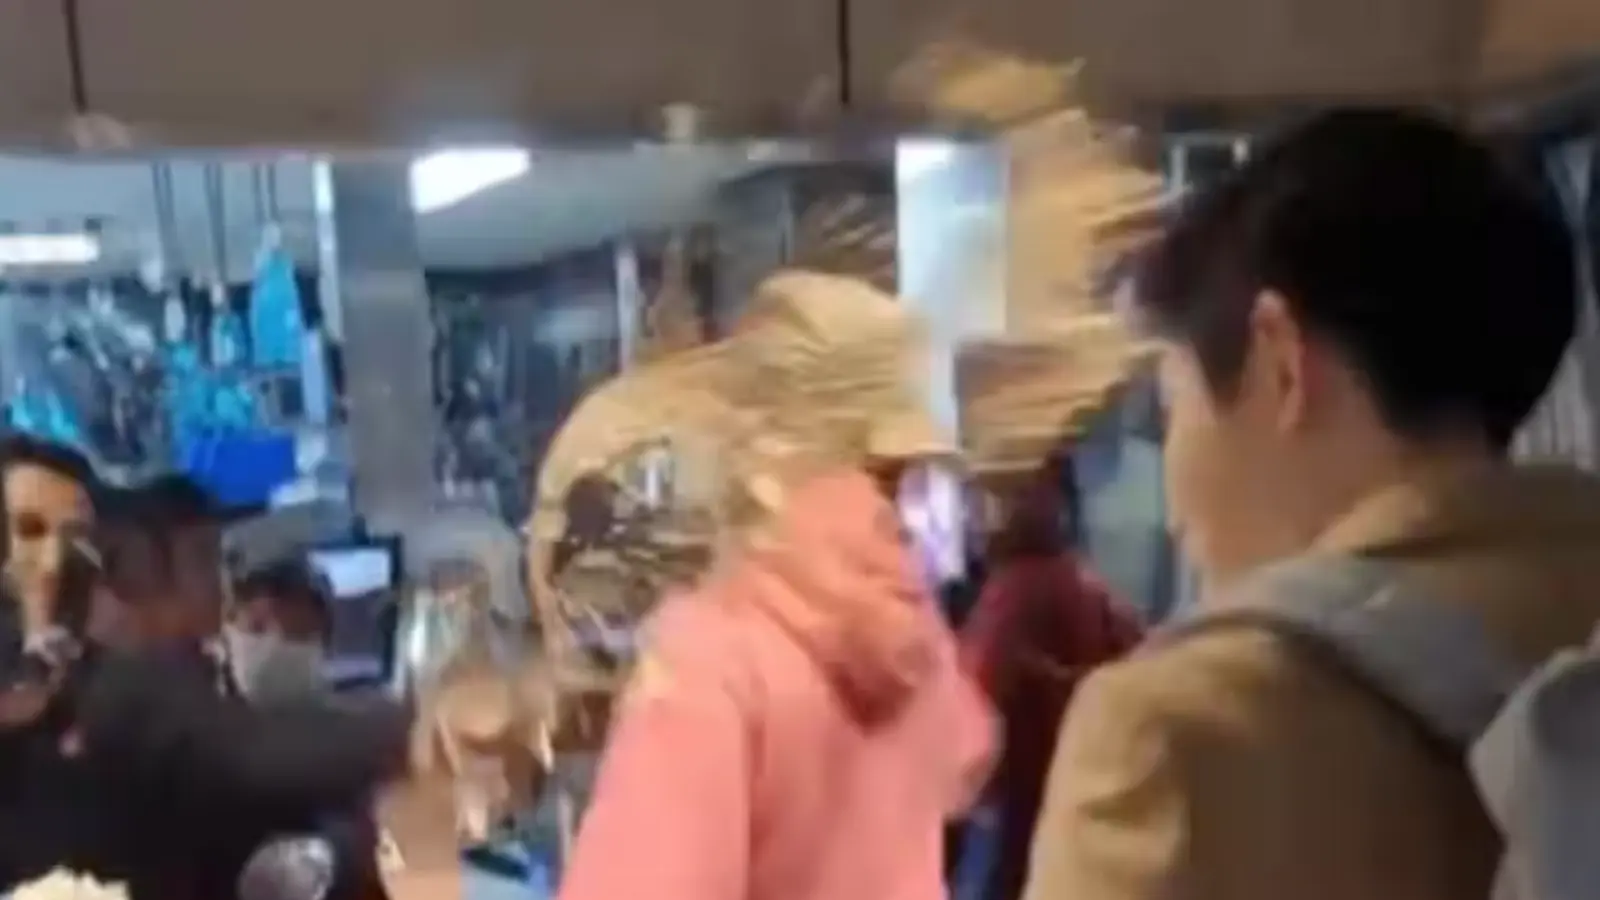 Un employé de McDo lance un breuvage au visage d'un client et ça dégénère